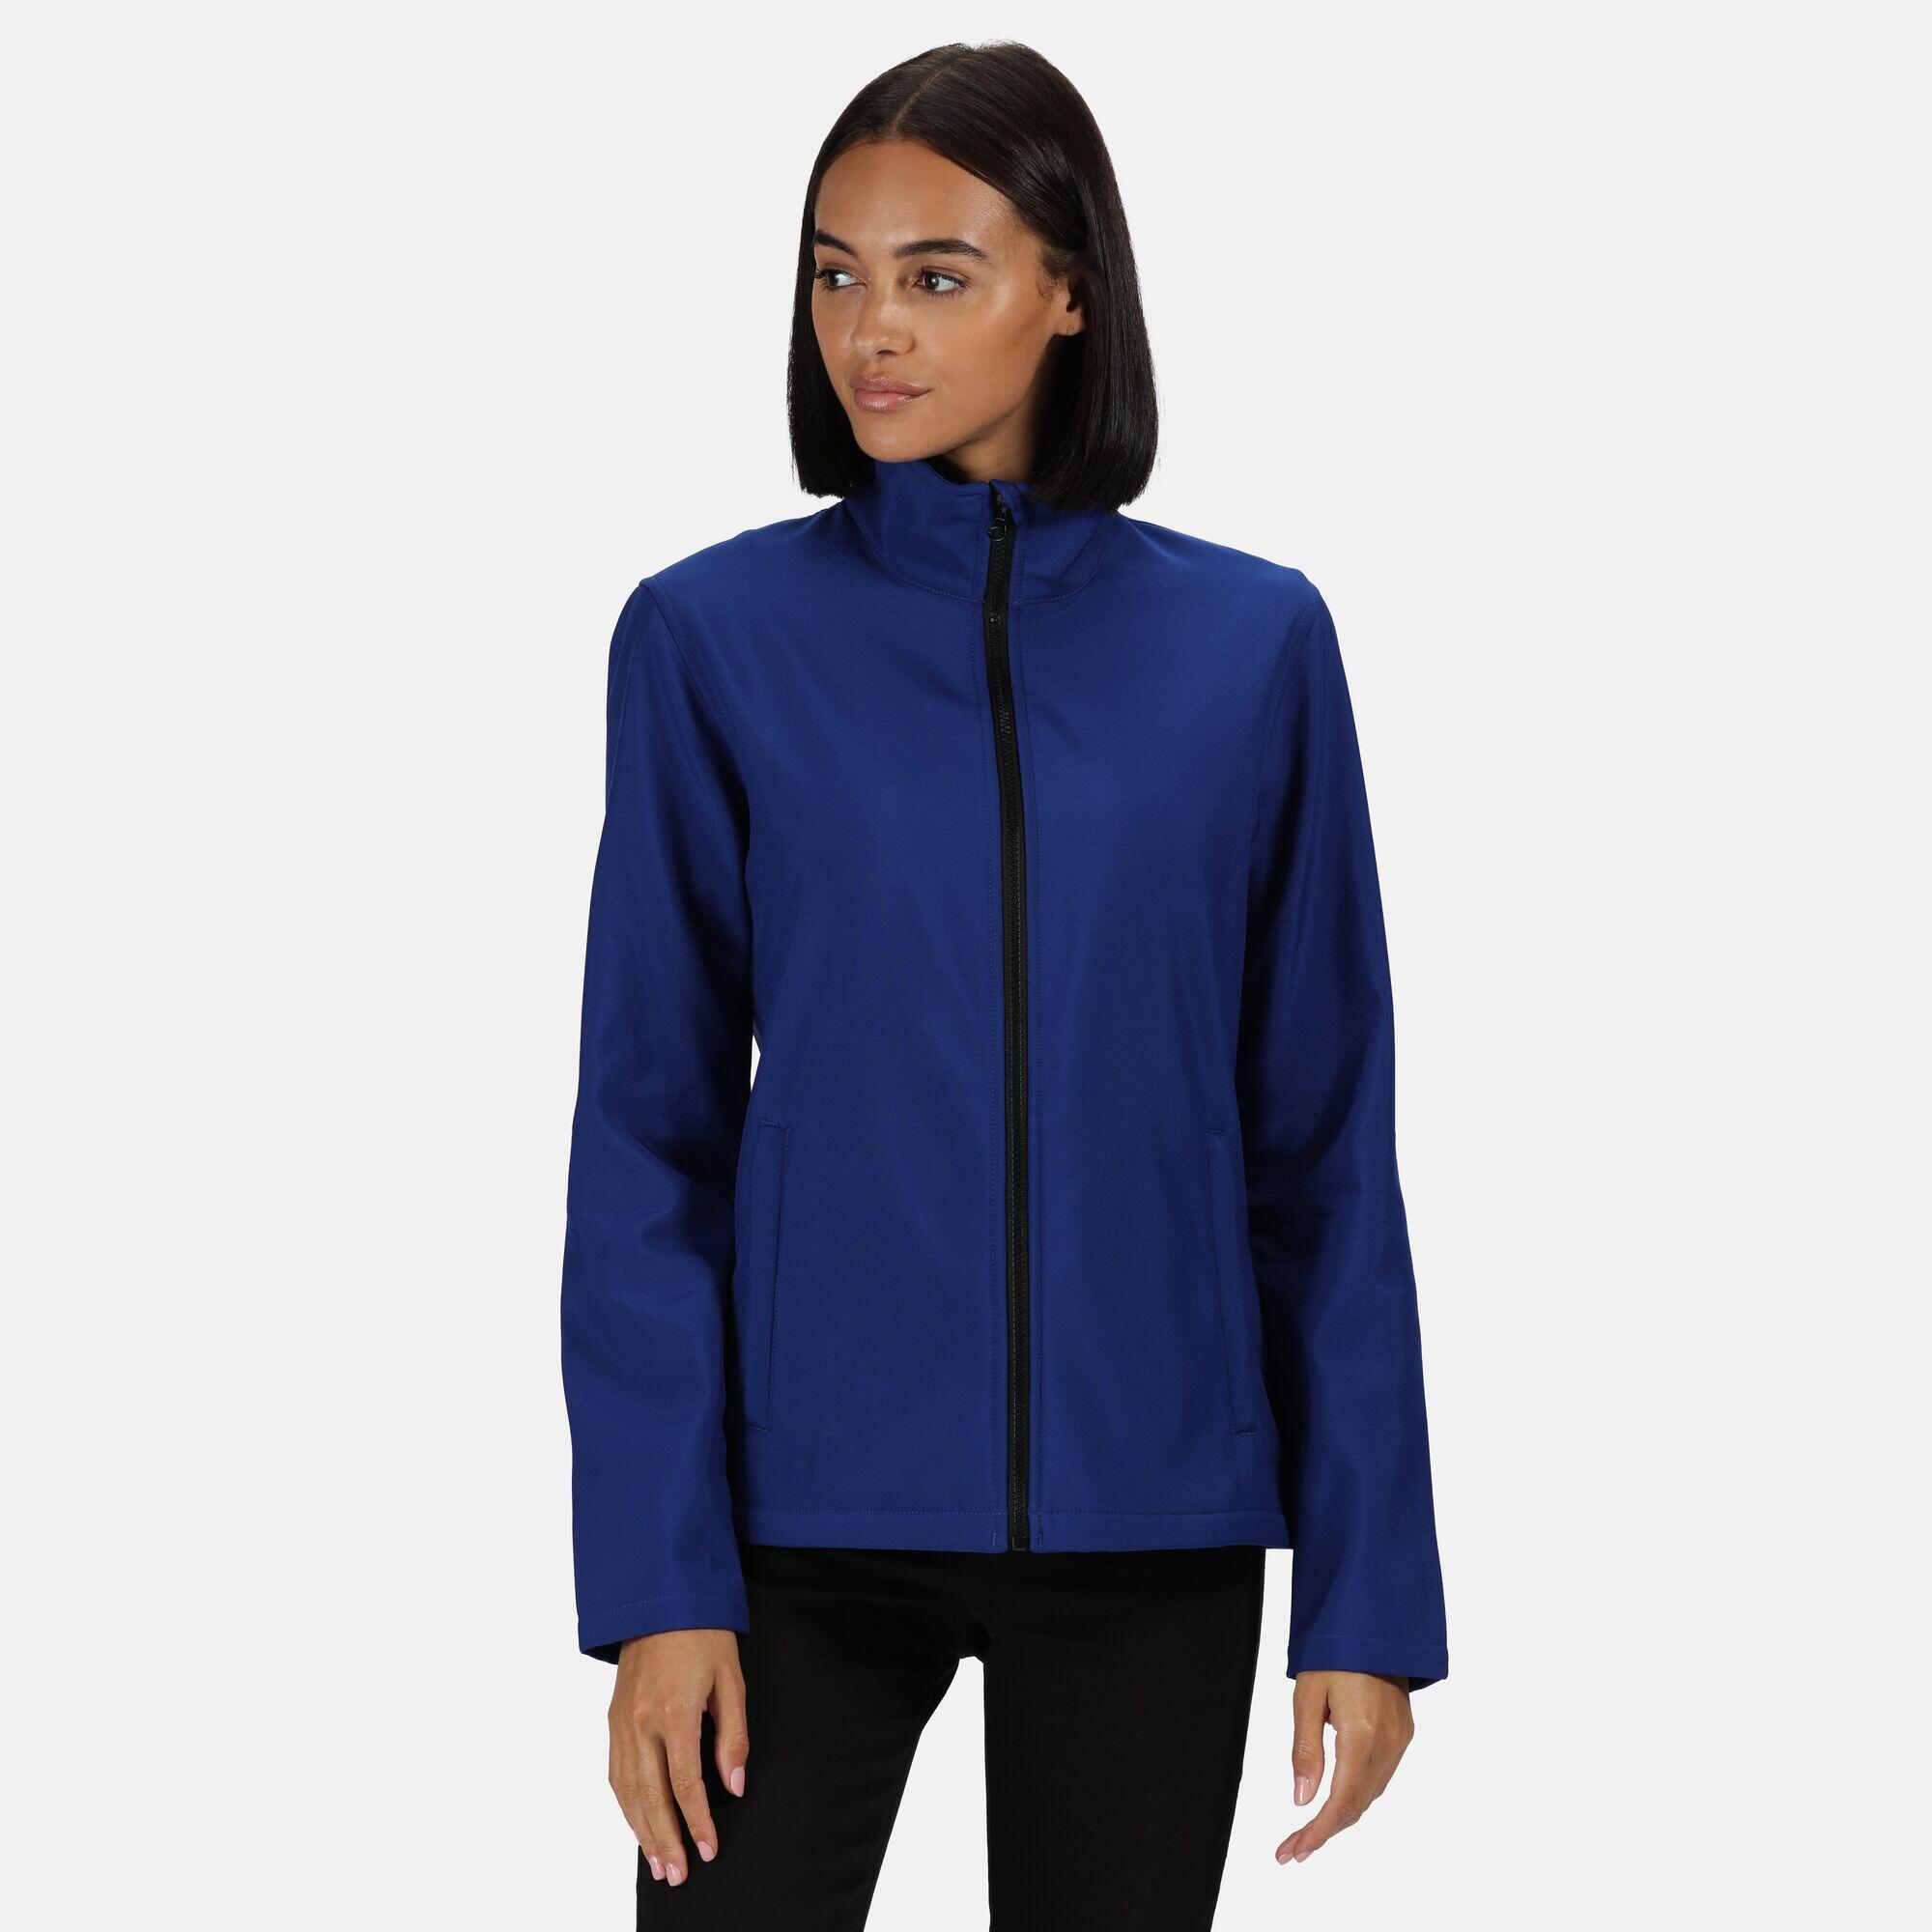 Womens/Ladies Ablaze Printable Softshell Jacket (Royal Blue/Black) 3/5